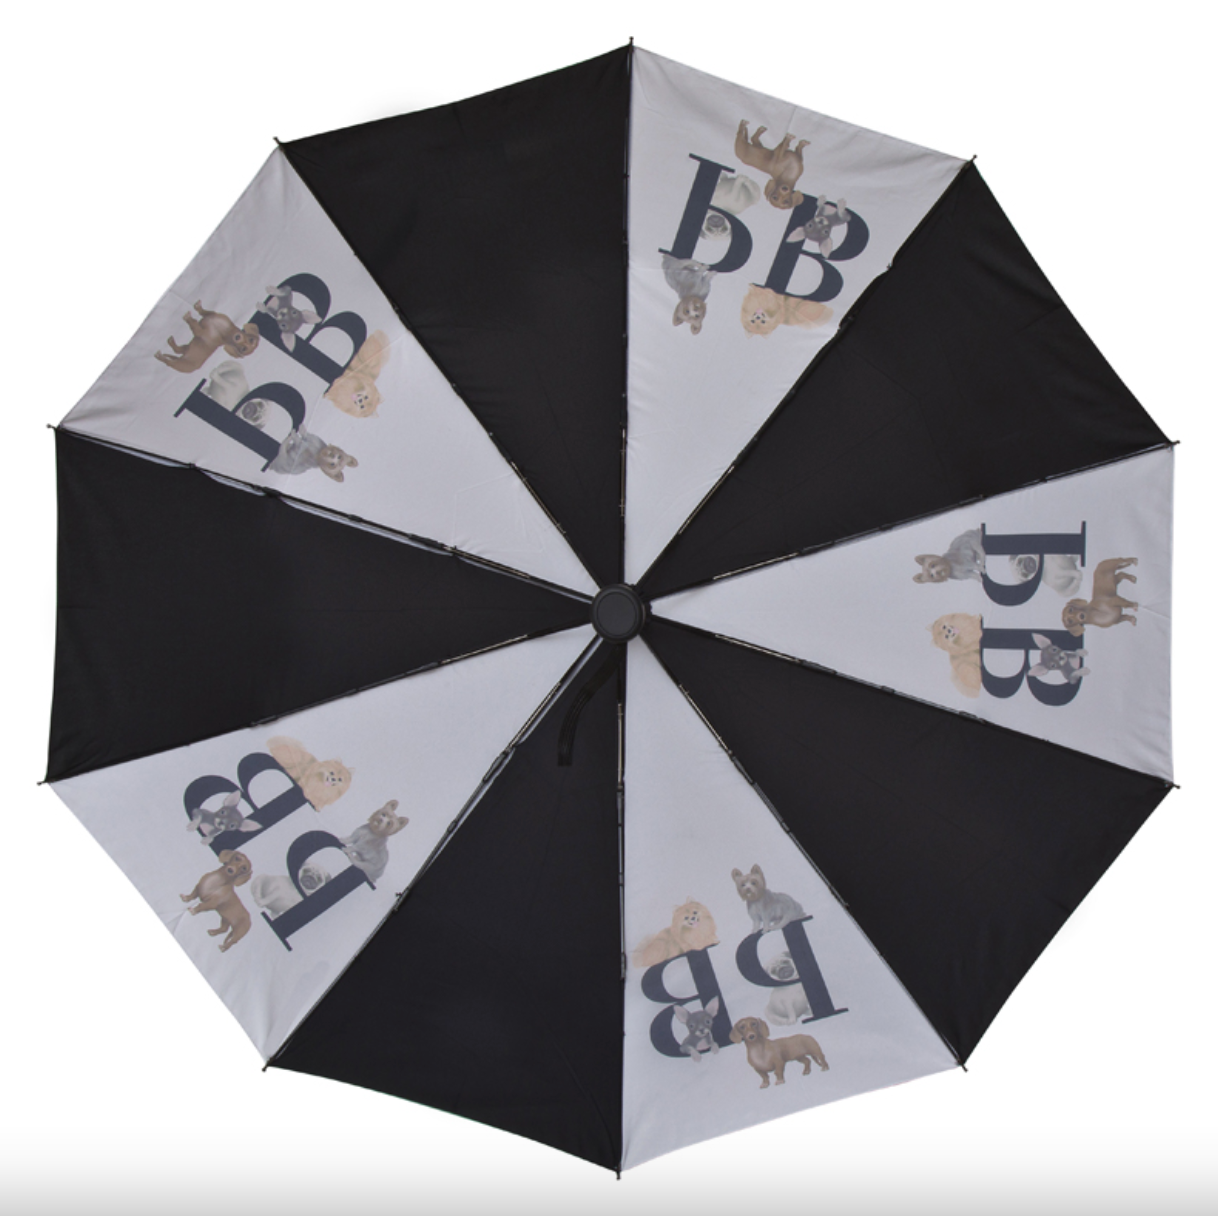 Guarda-chuva dobrável DogMania: guarda-chuva elegante e sustentável para amantes de cães